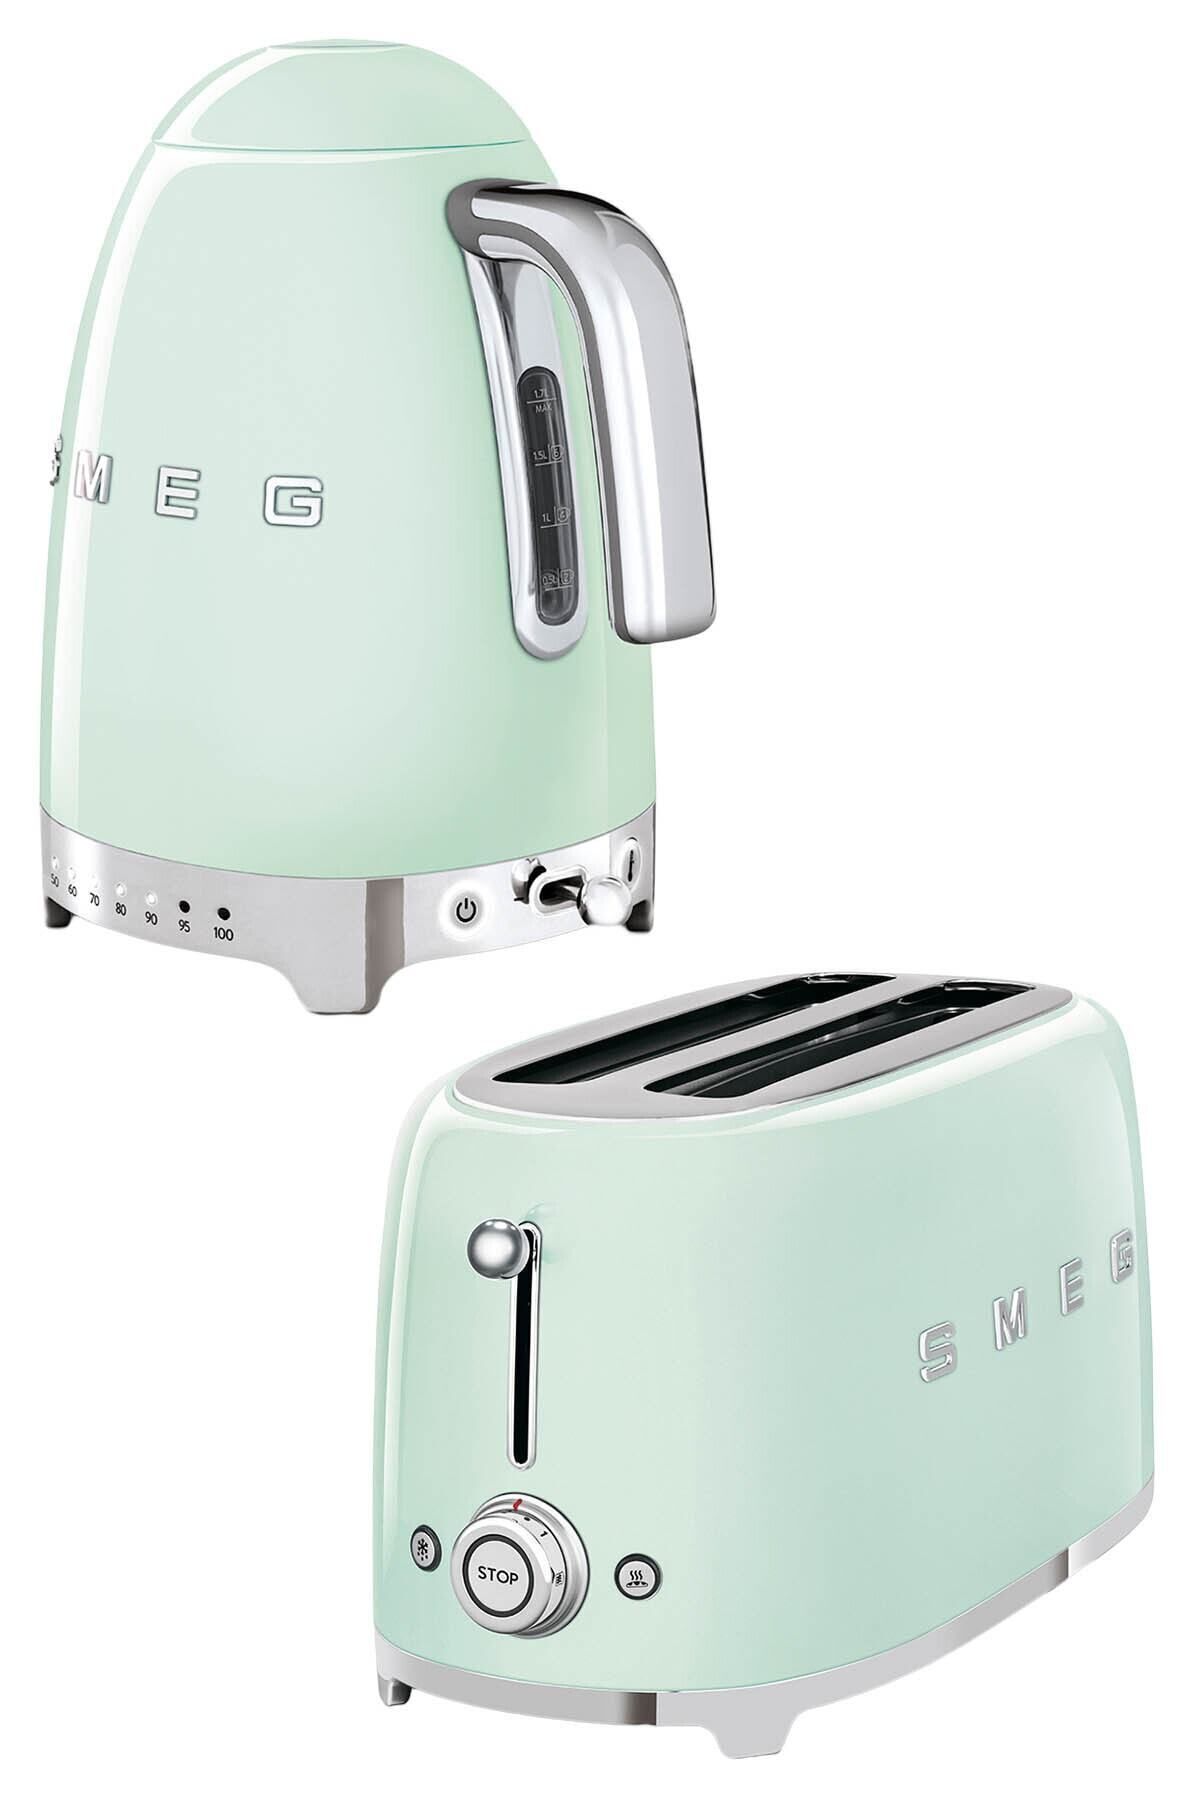 Smeg Pastel Yeşil Isı Ayarlı Kettle Ve 2x4 Ekmek Kızartma Makinesi Seti